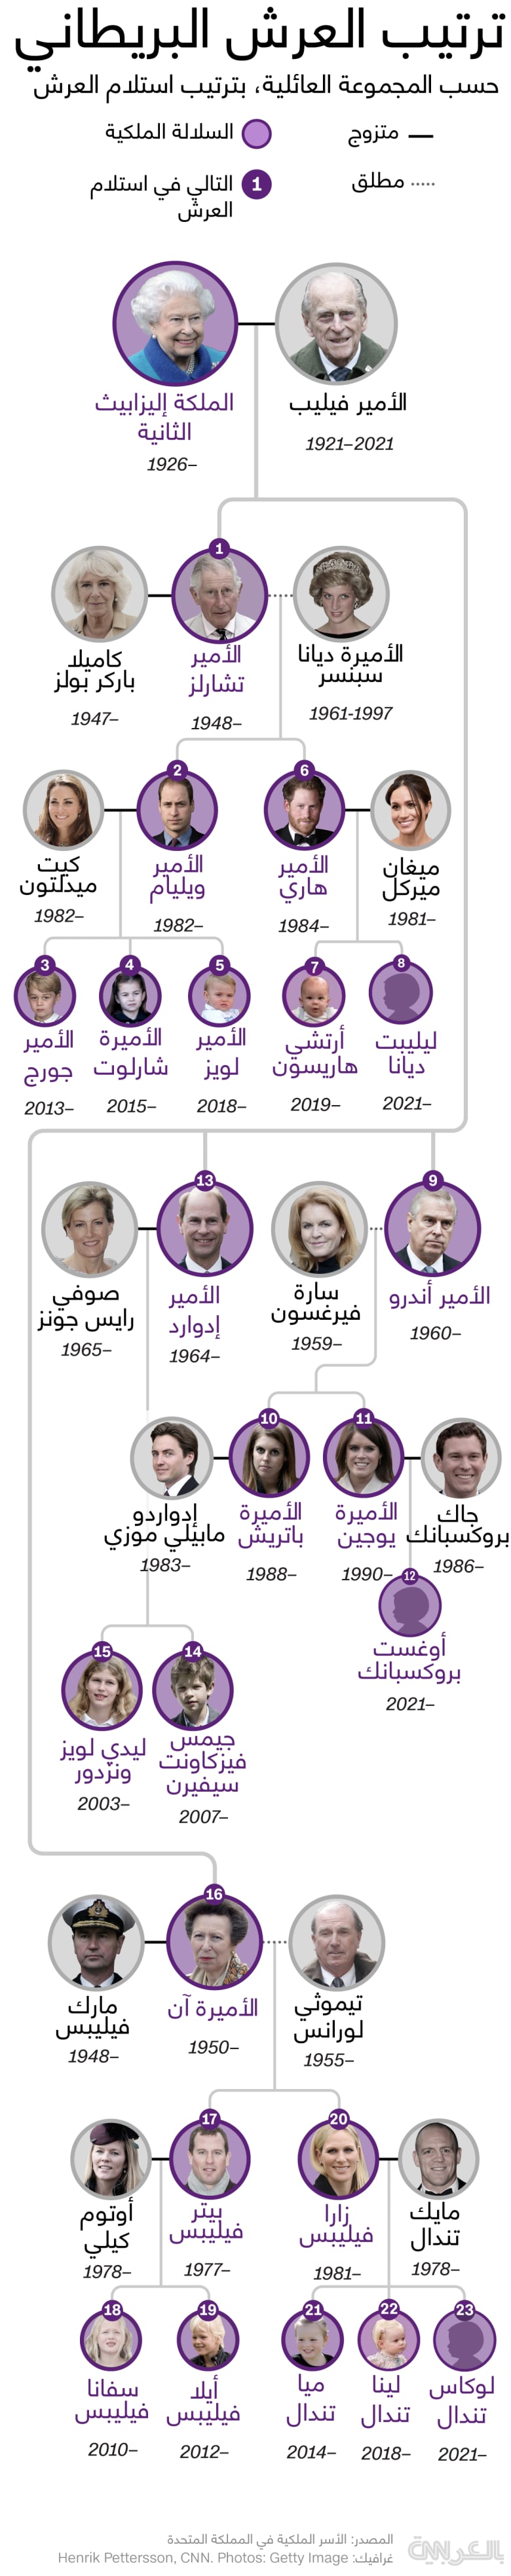 Royal-Family-Tree-2021